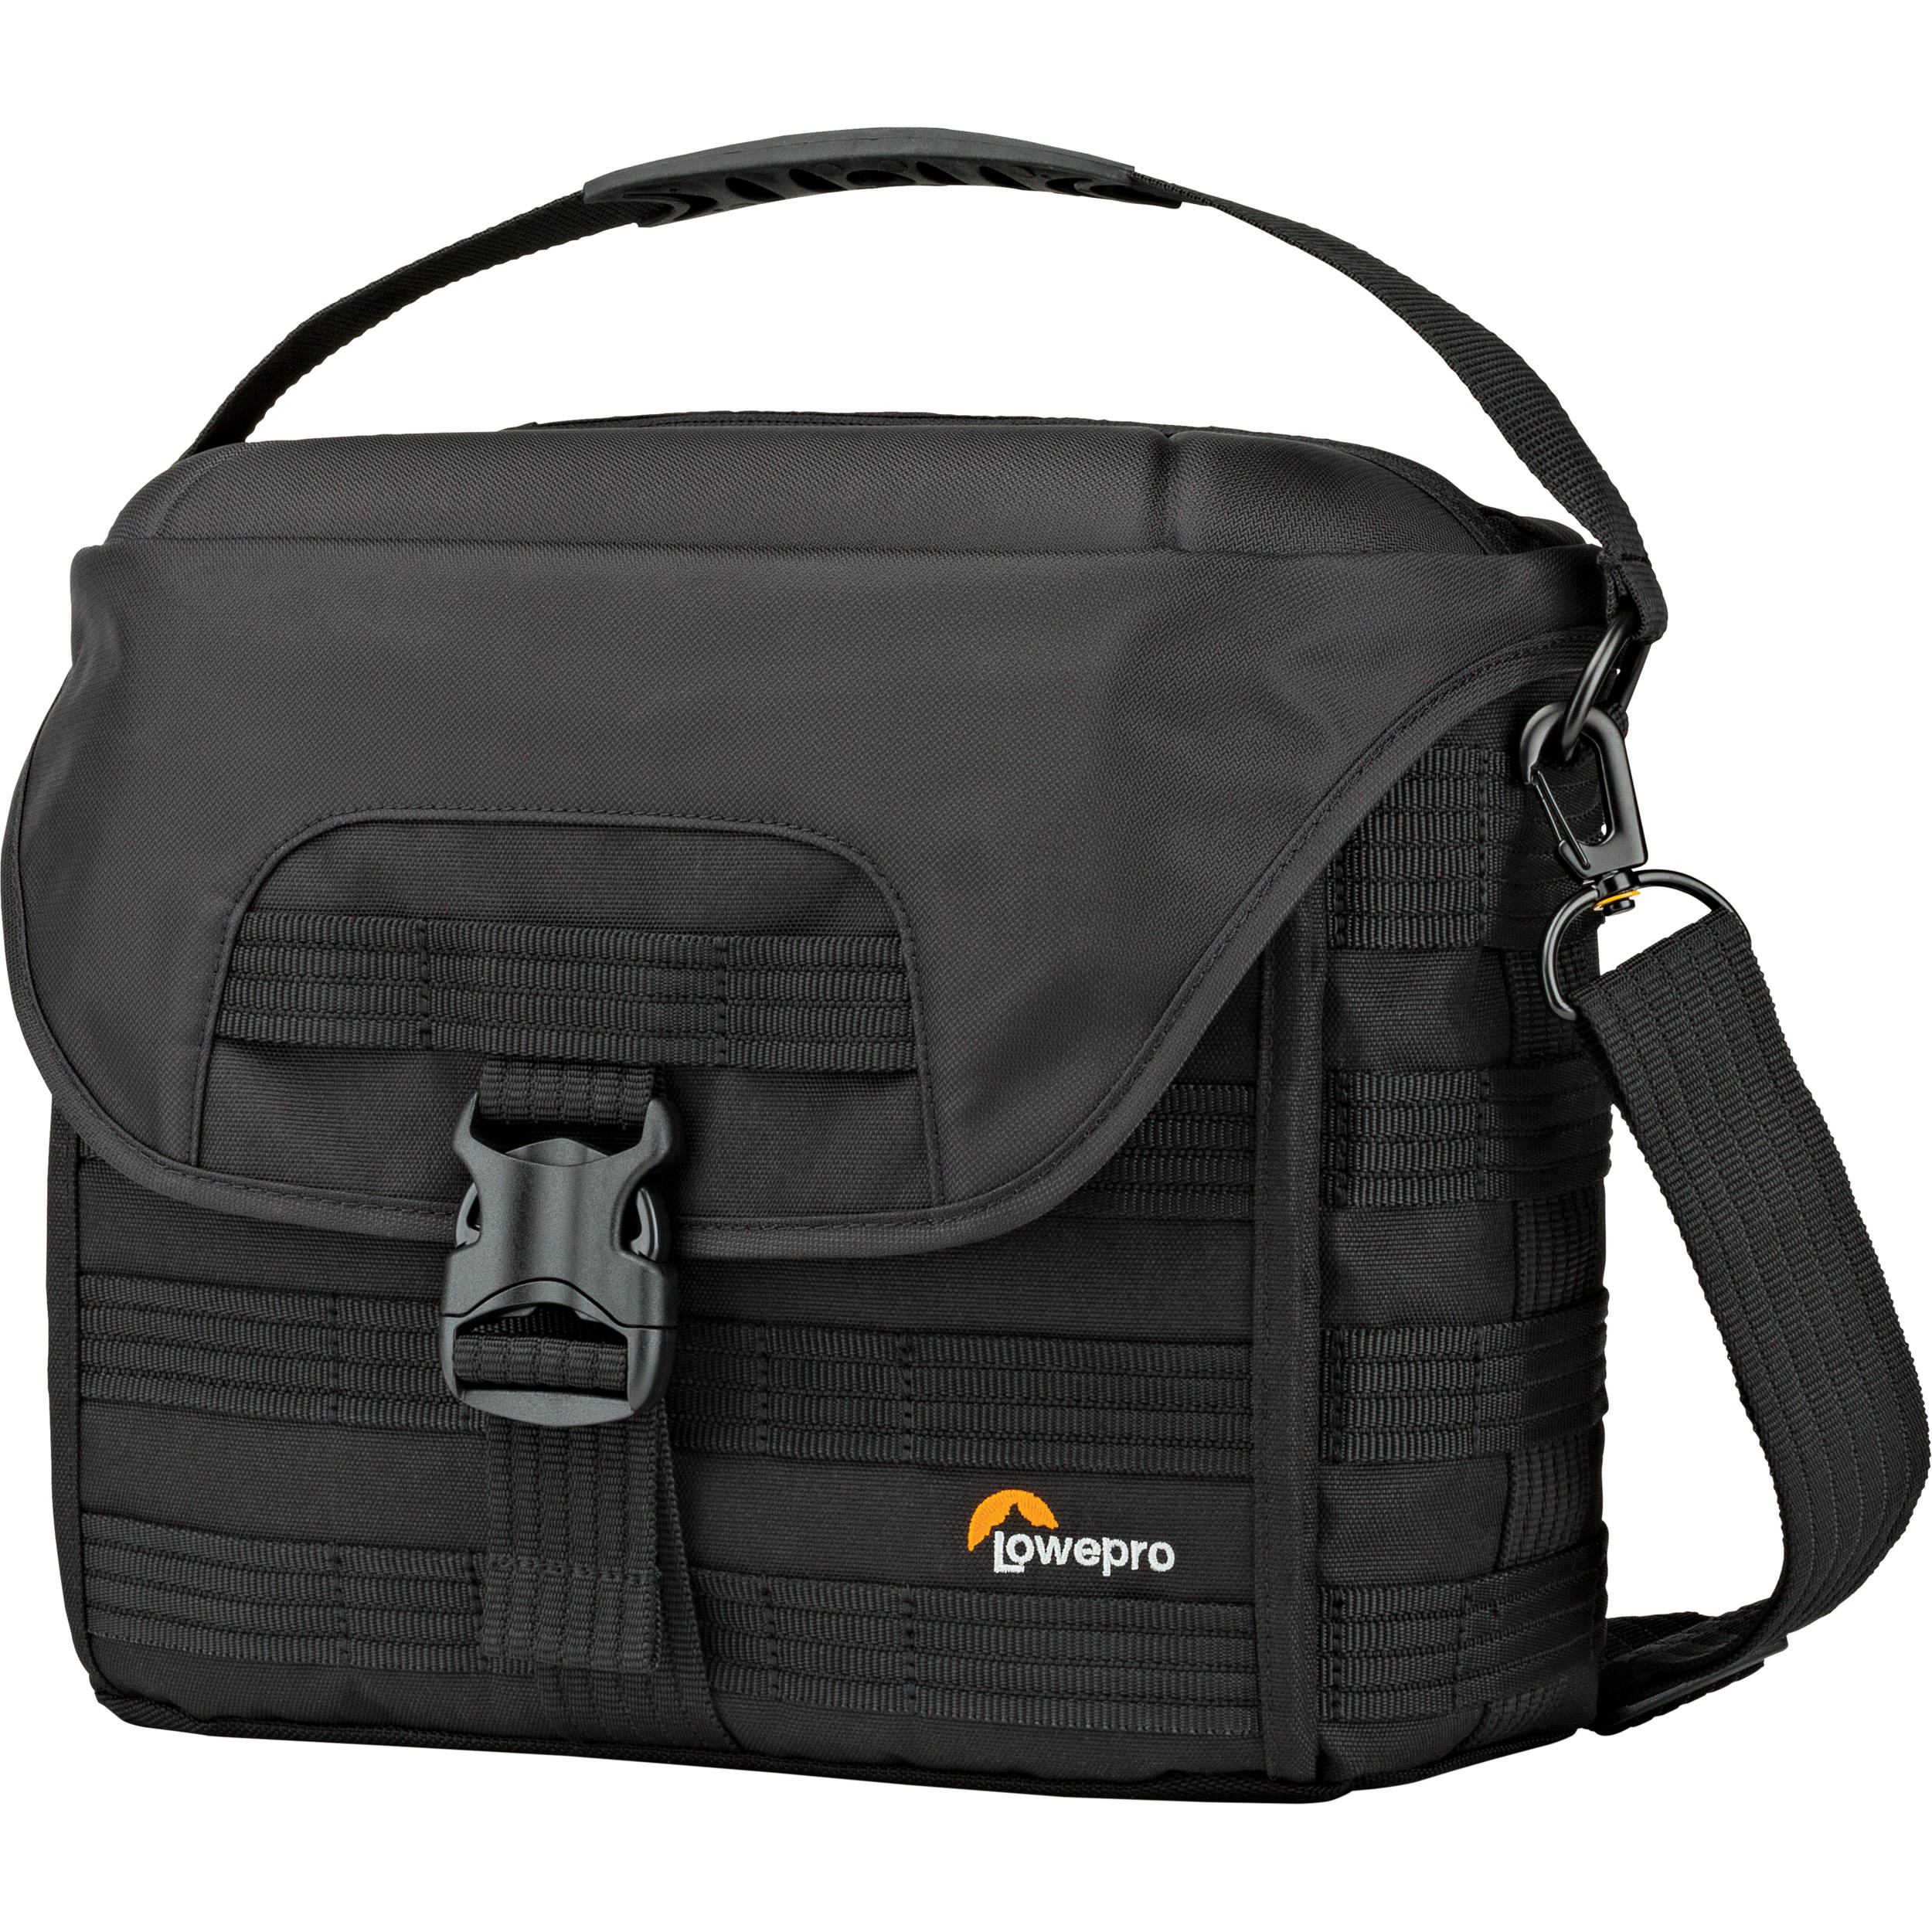 Lowepro ProTactic SH 180 AW Shoulder Bag for a DSLR Camera & Lenses (Black)